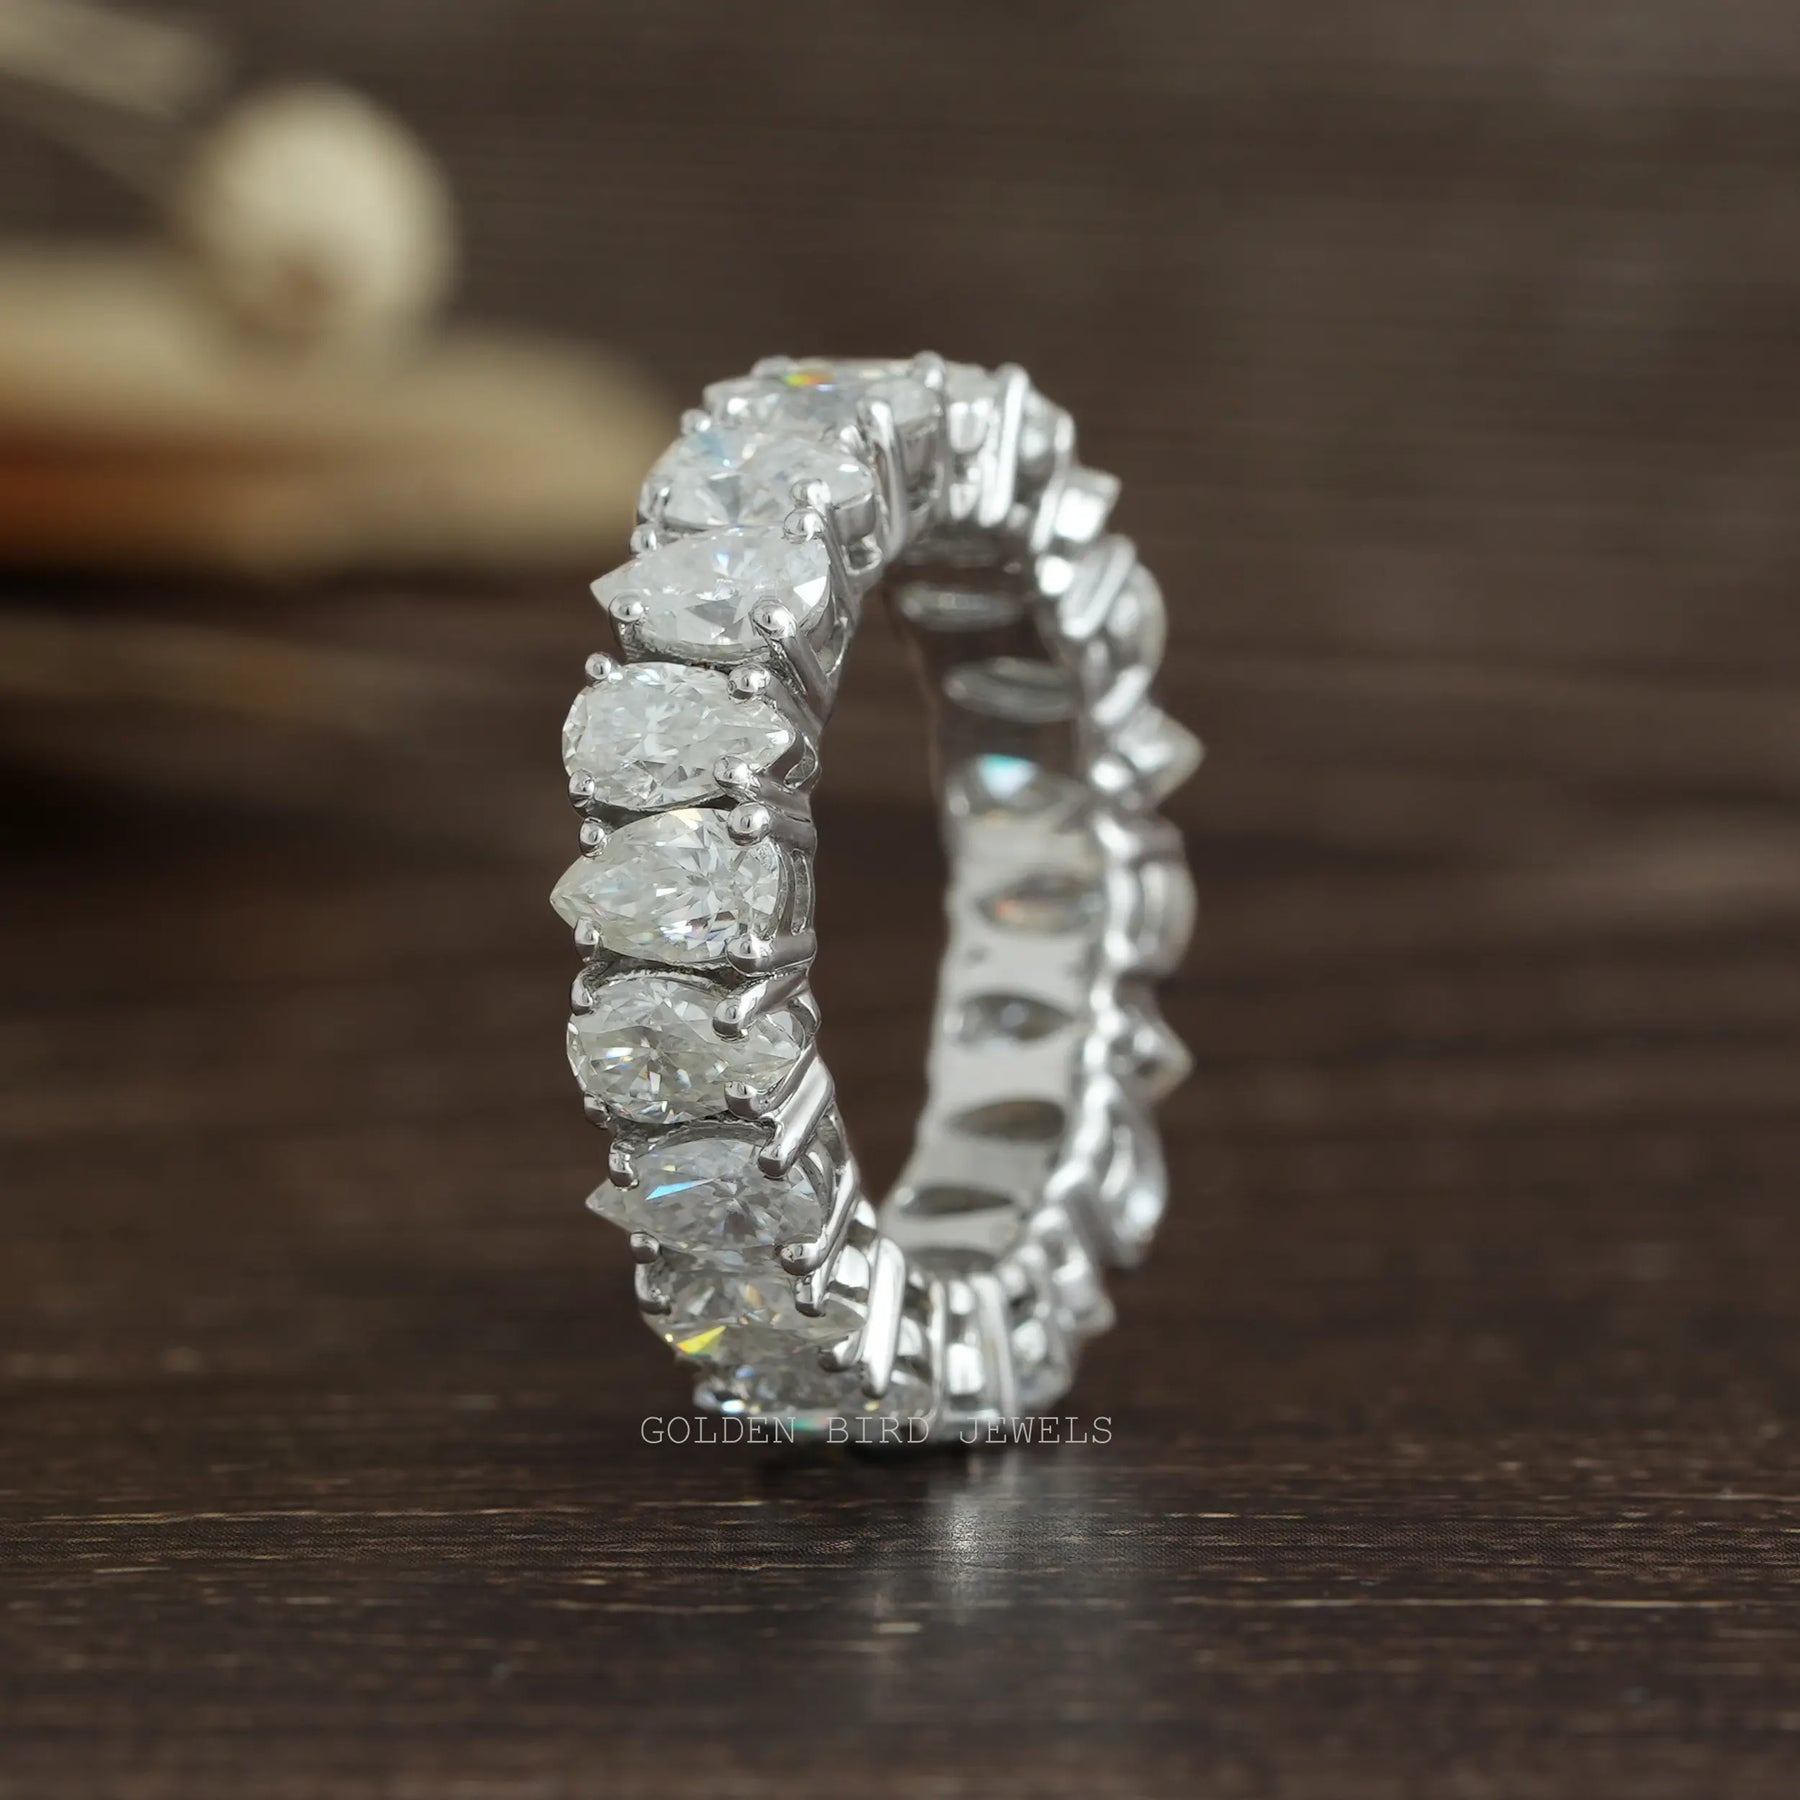 Straight ring of pear cut moissanite full eternity wedding band for women